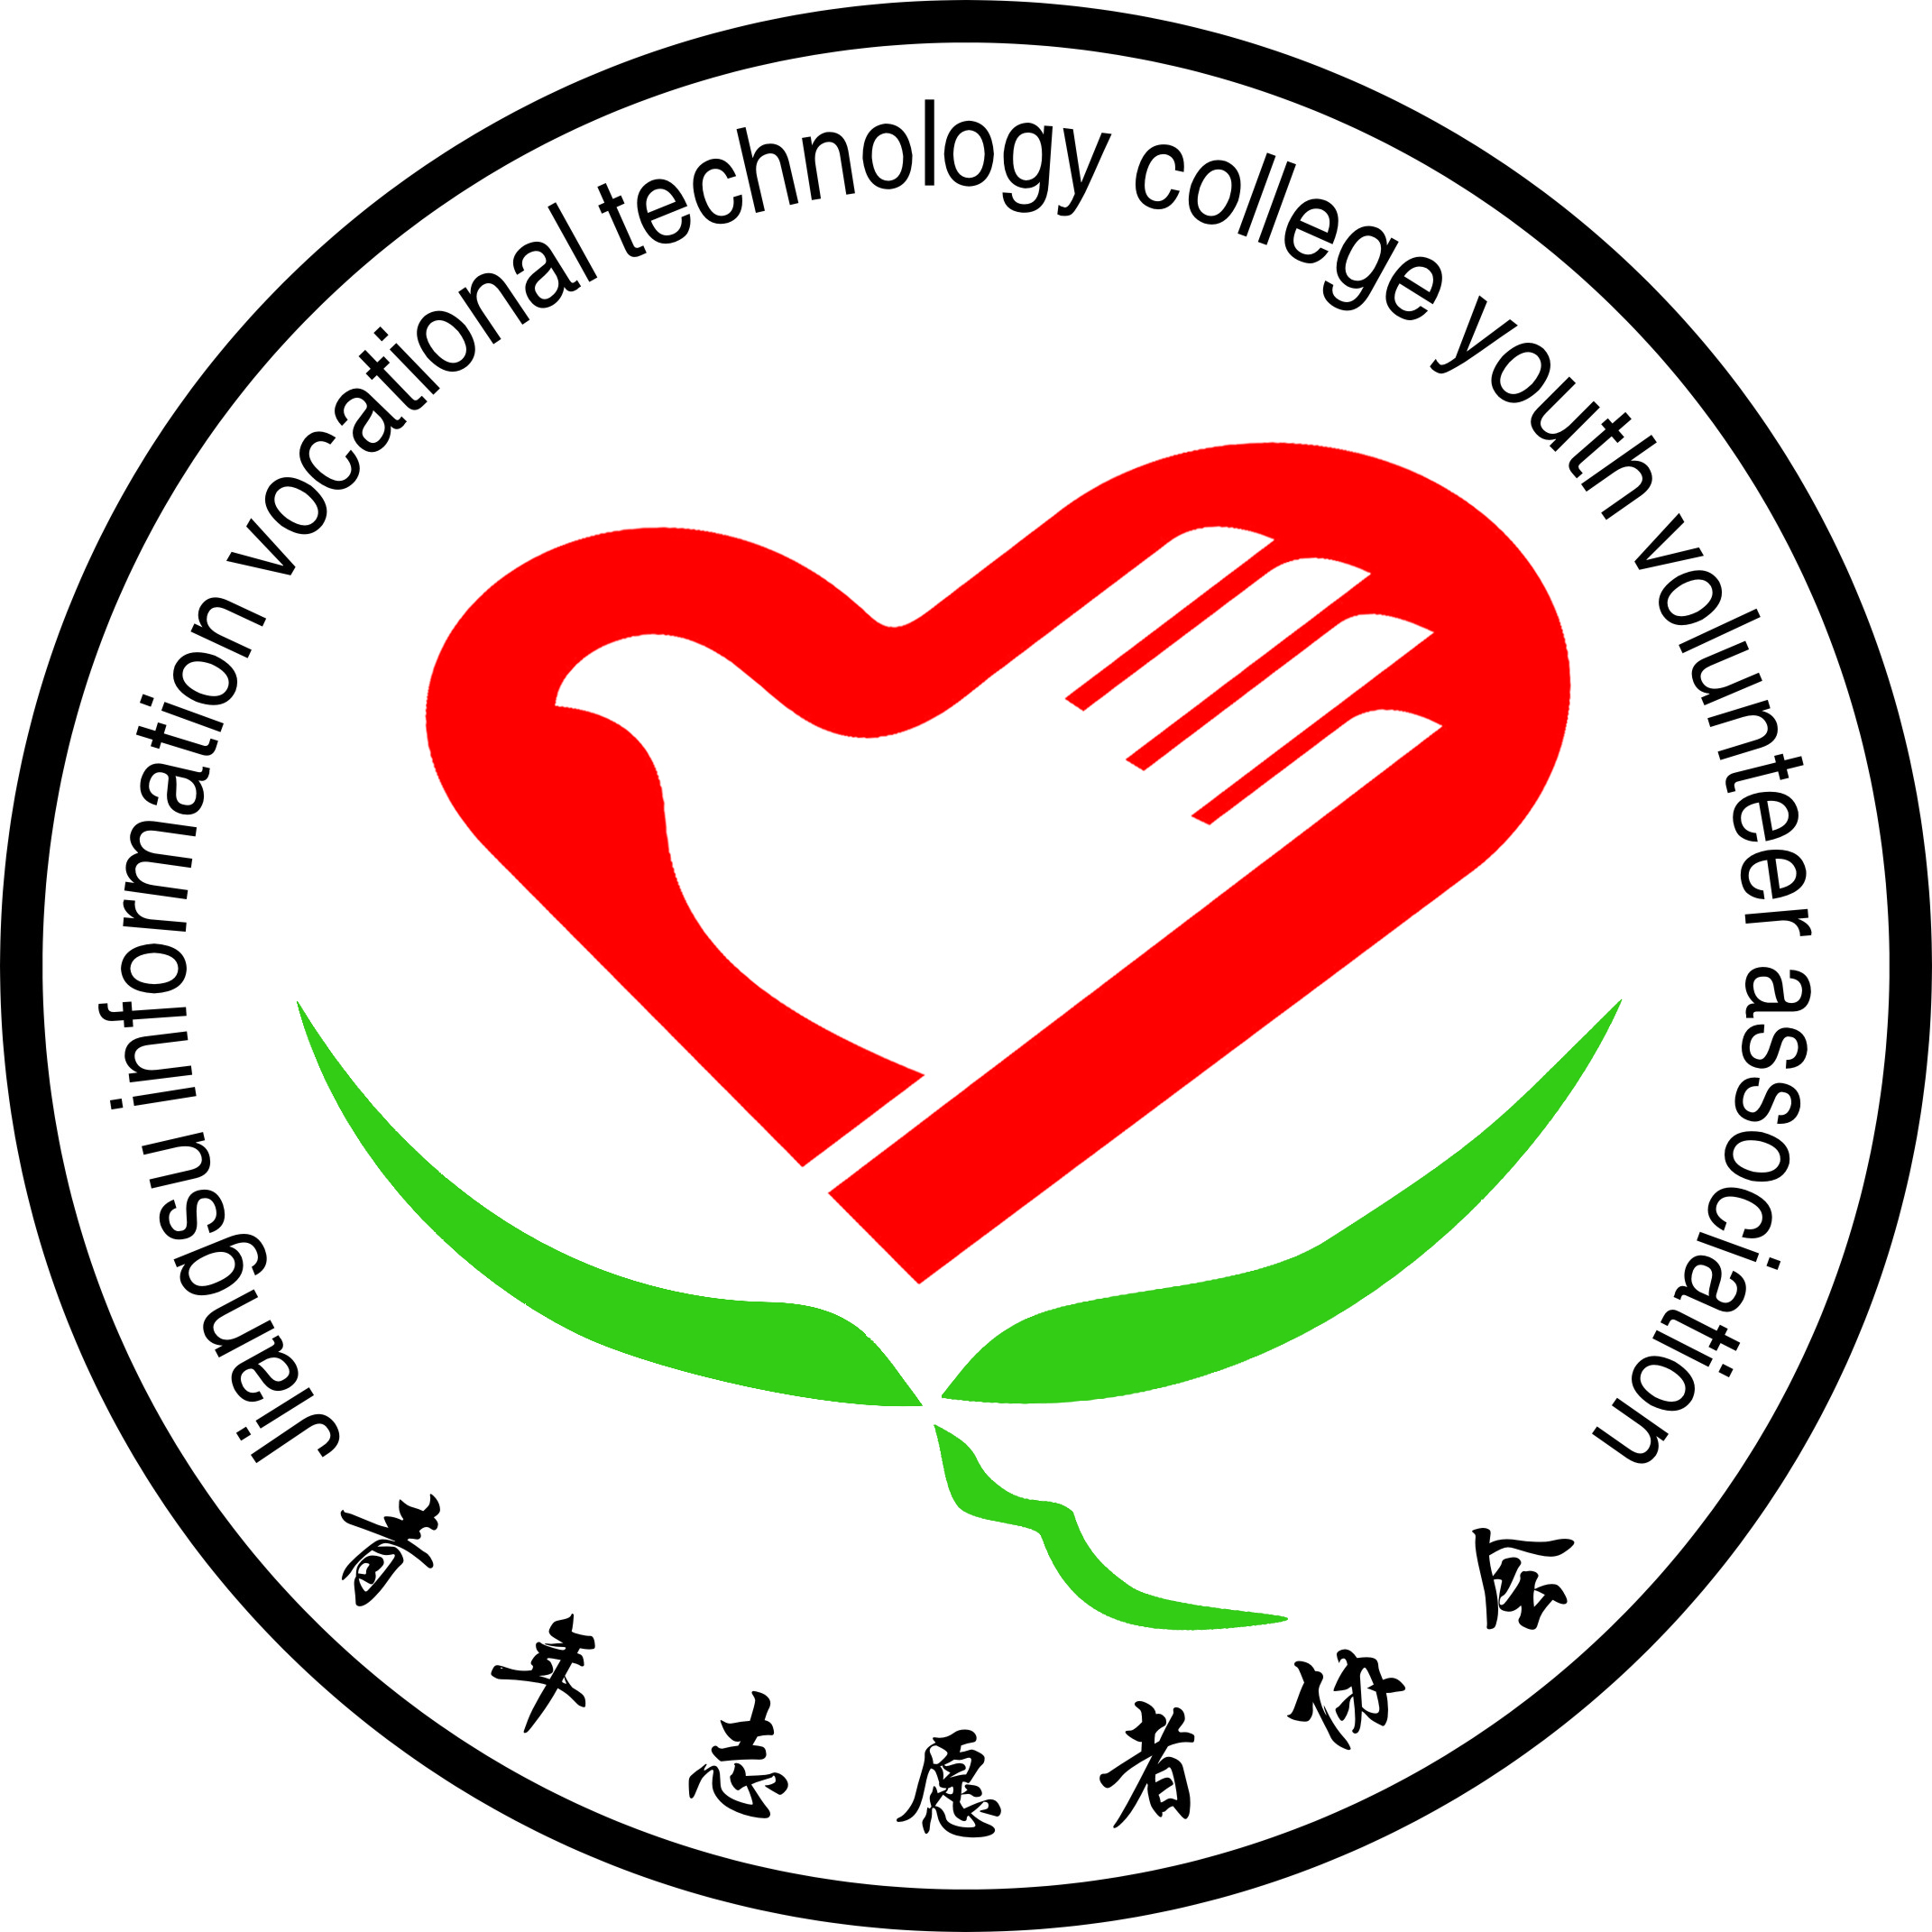 江蘇信息職業技術學院青年志願者協會會徽